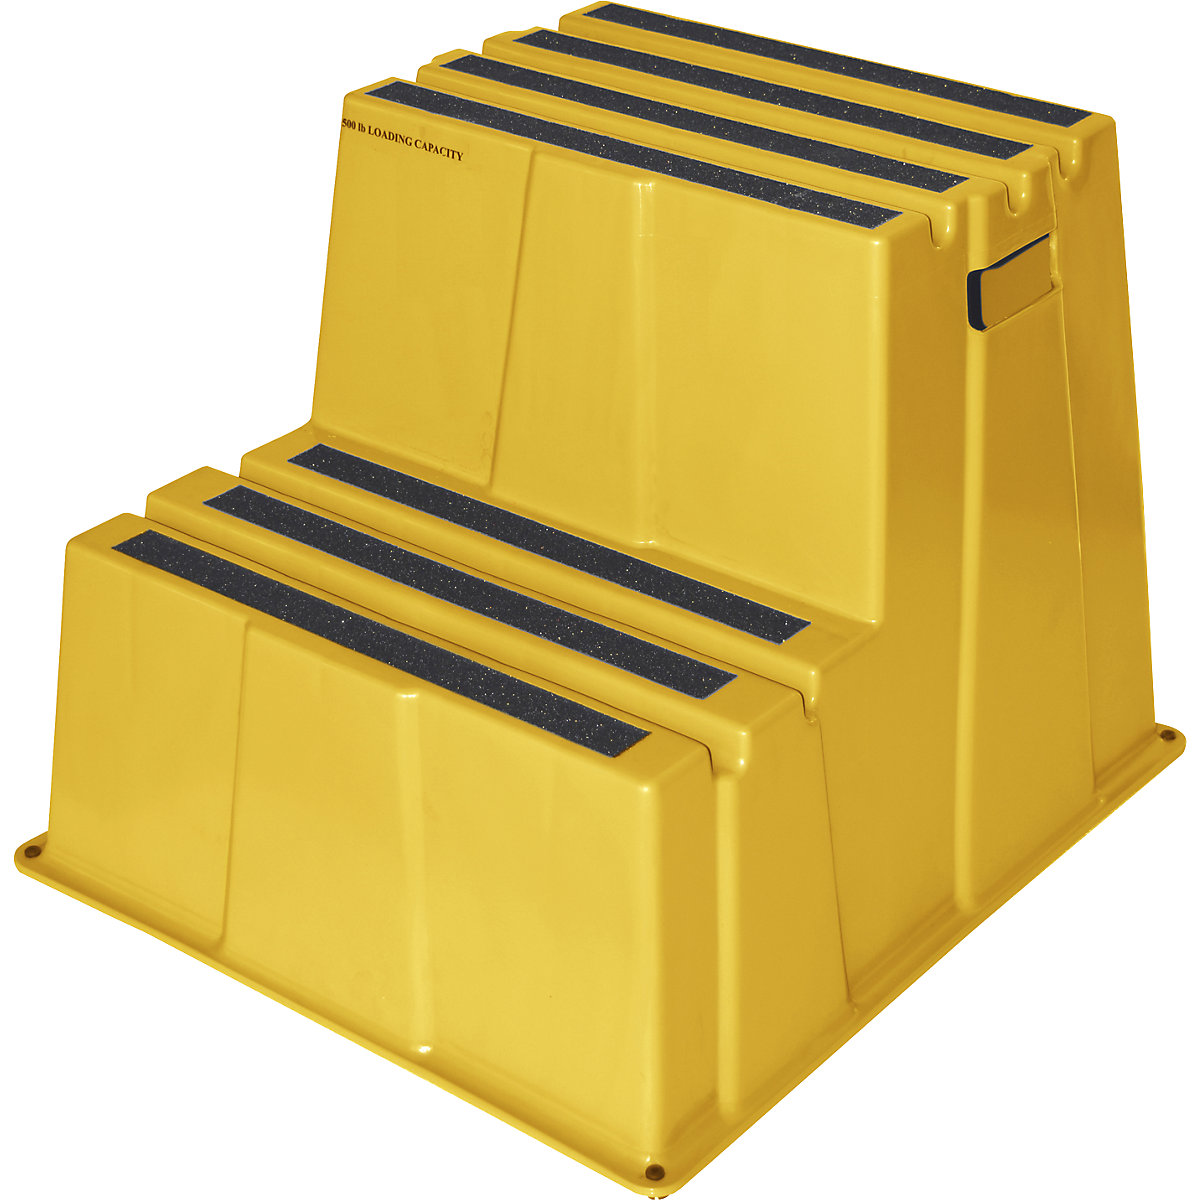 Degrau em plástico antiderrapante – Twinco, capacidade de carga 150 kg, 2 degraus, amarelo, a partir de 2 unid.-5